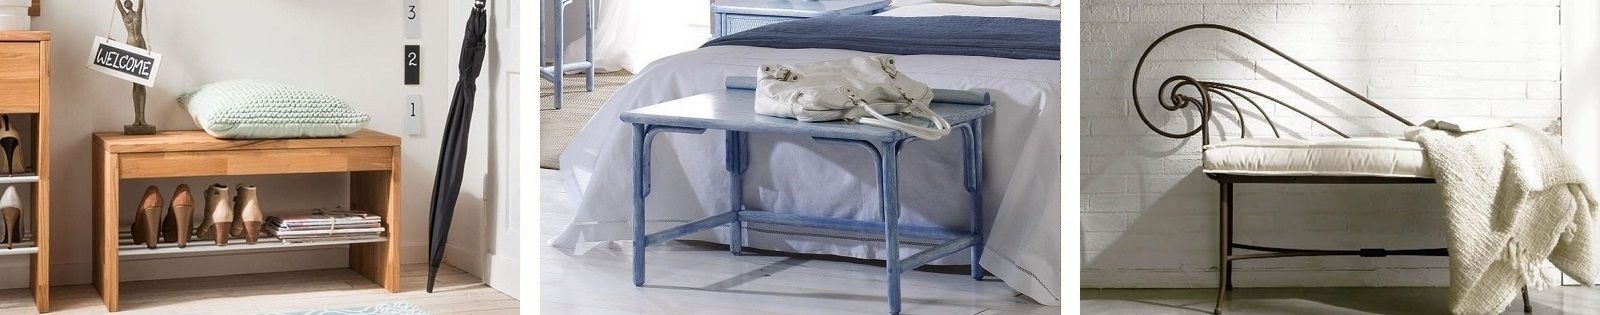 Banc de lit : meubles pour la chambre haut de gamme. Lotuséa